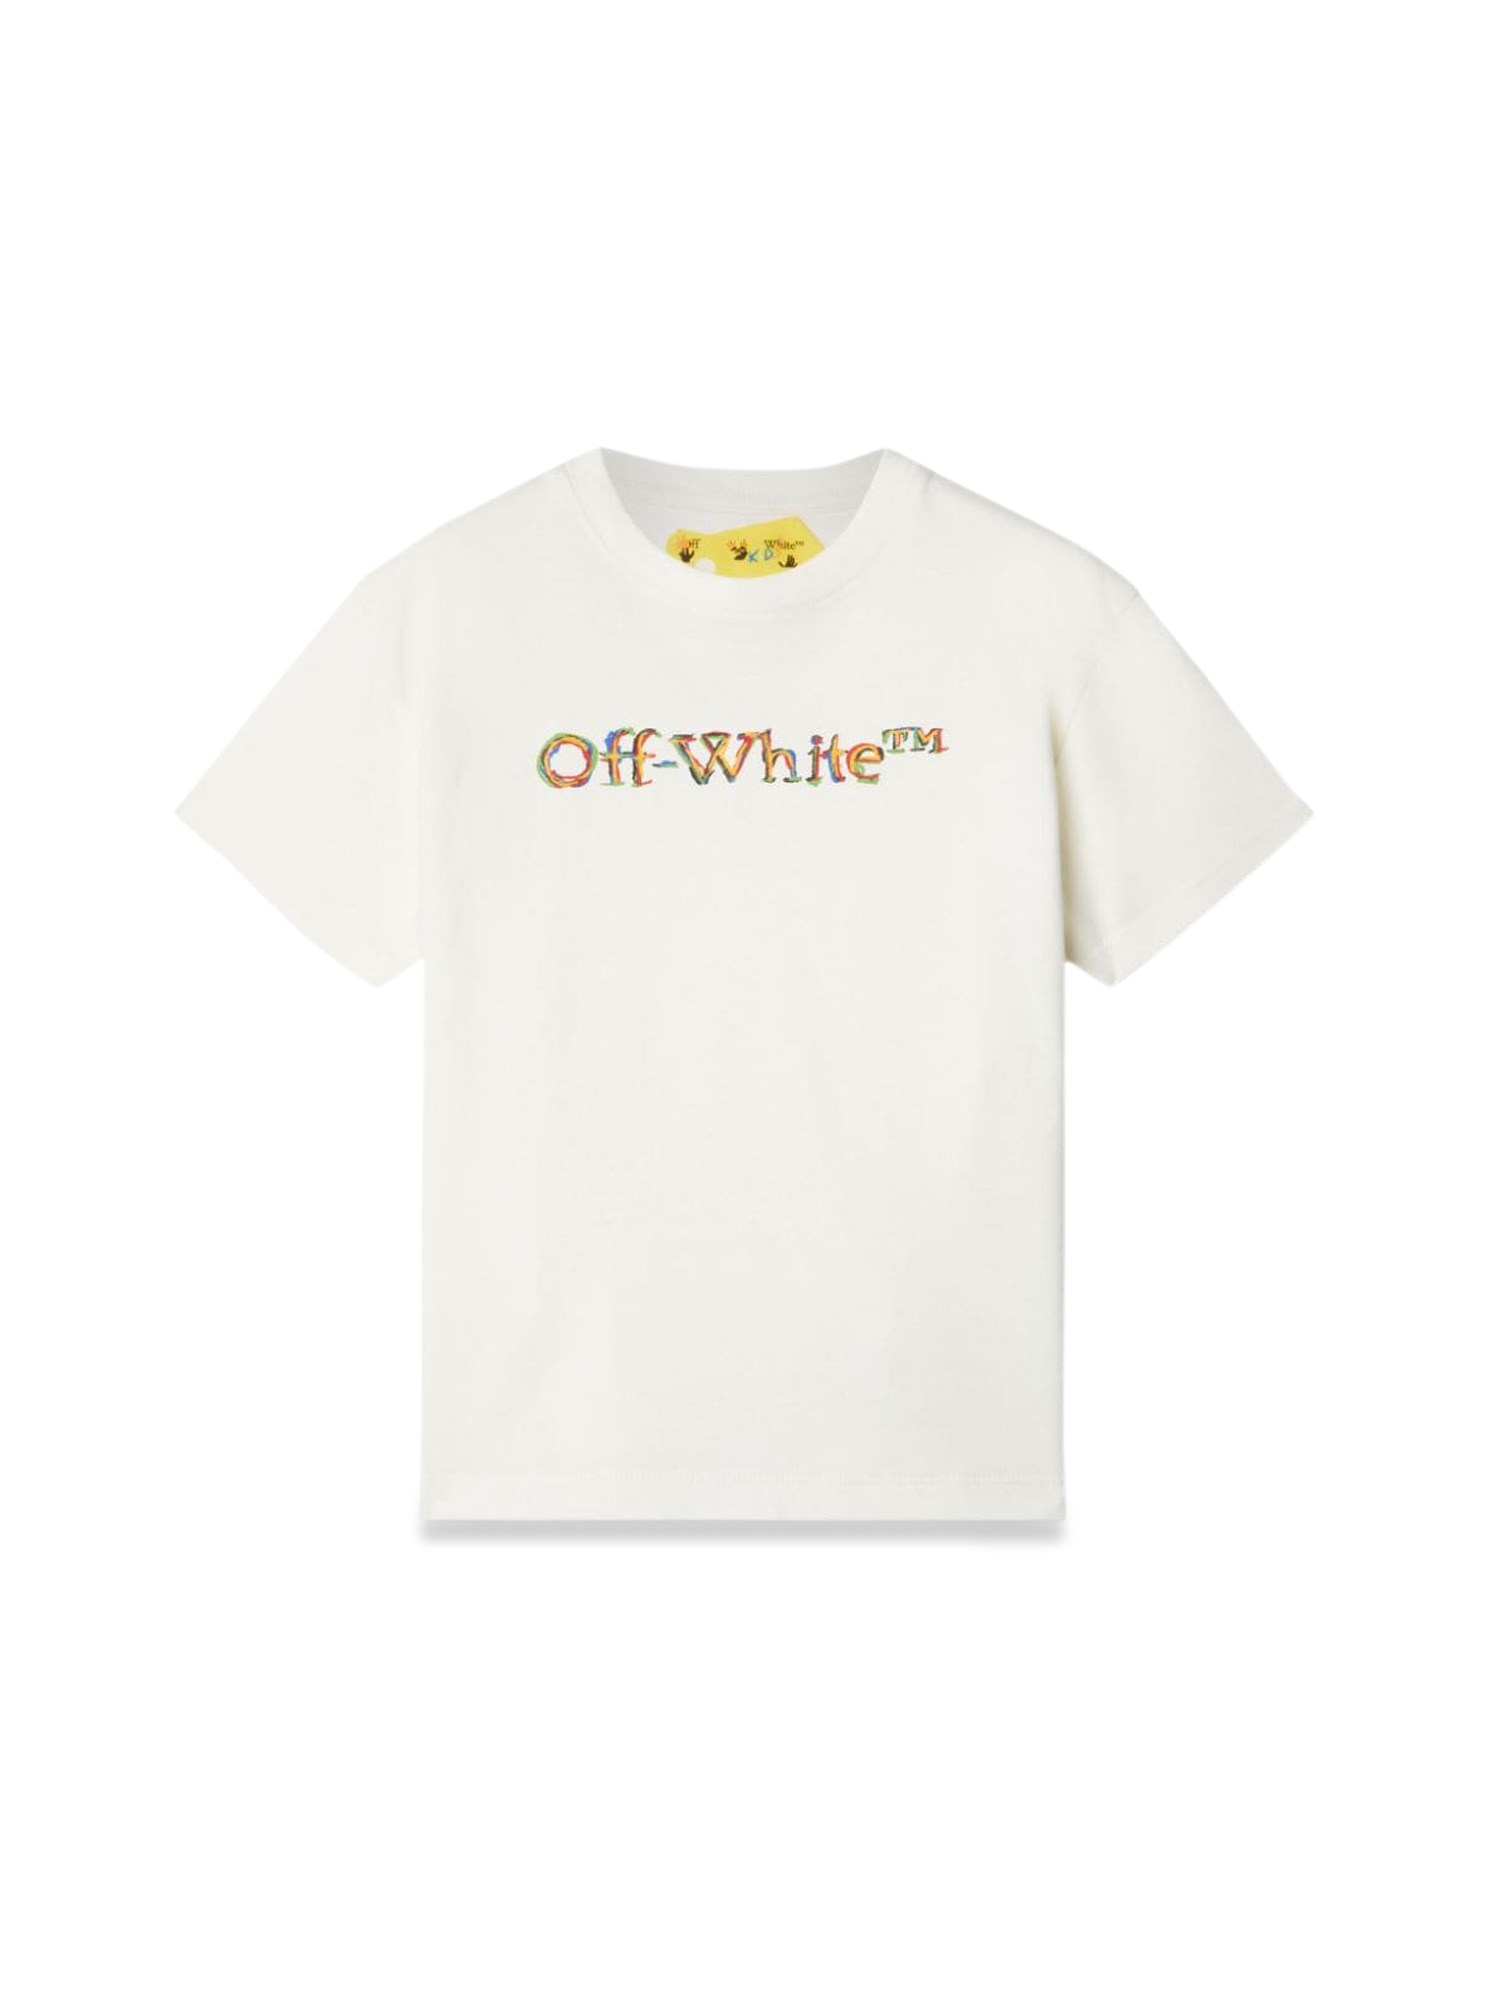 OFF-WHITE off-white tee s/s